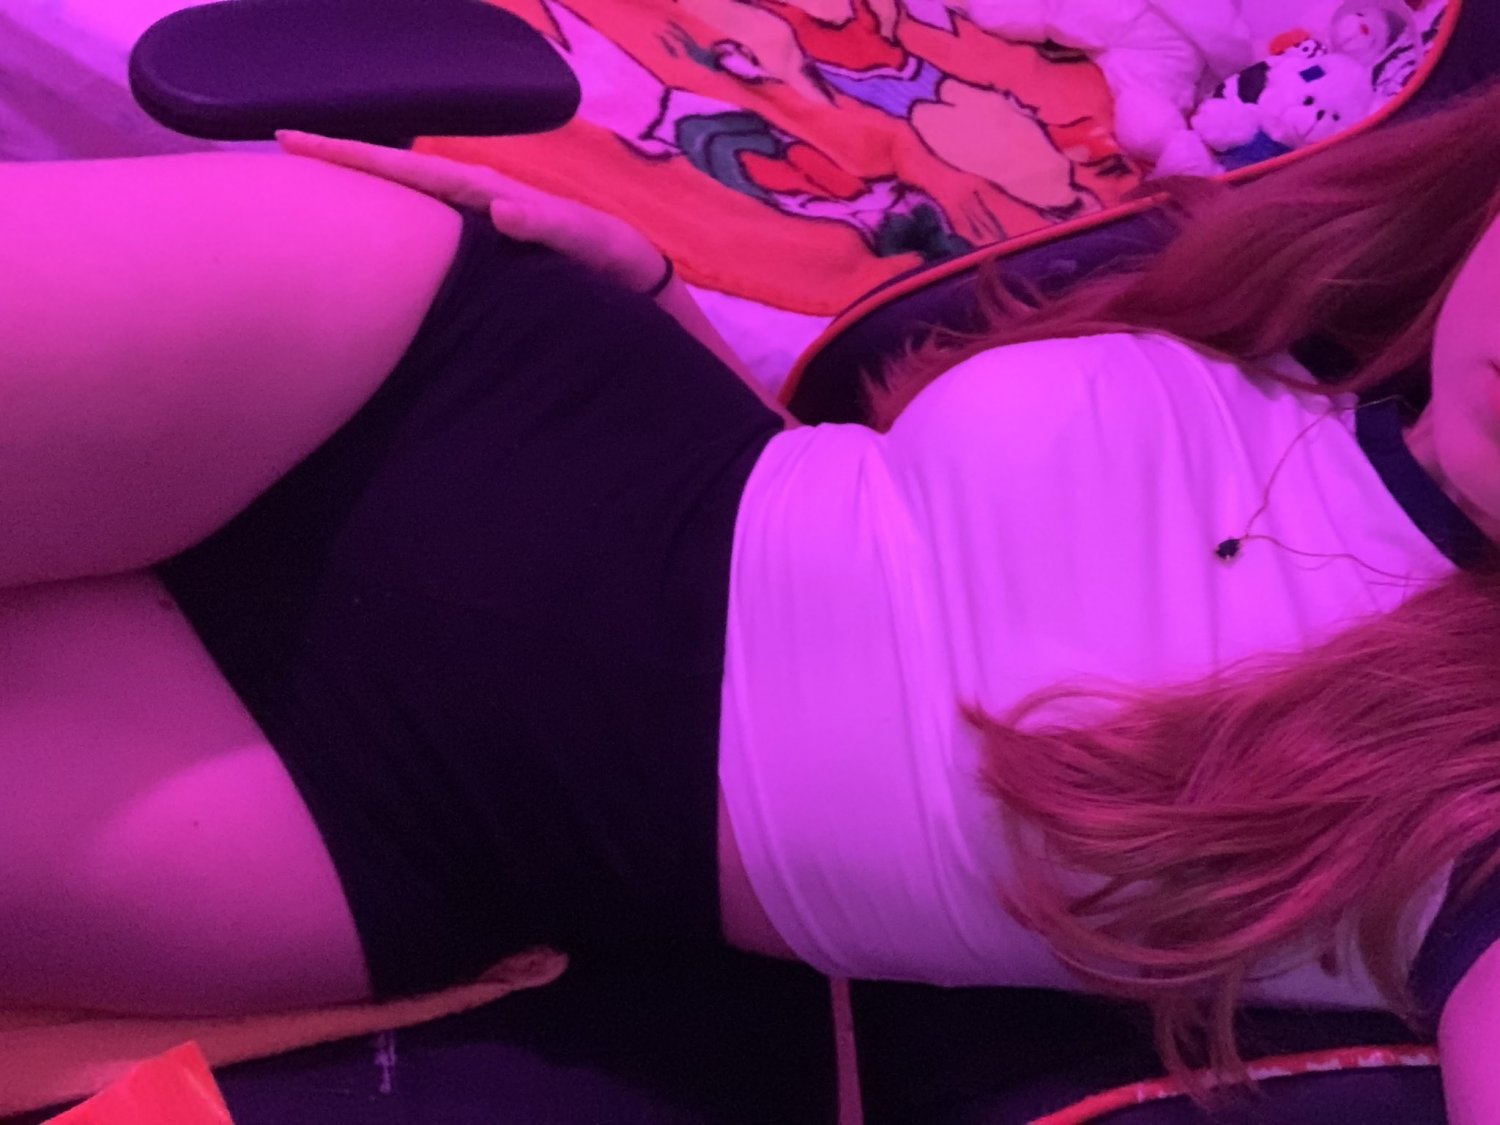 Redhead Spanish twitch thot slutty gamer girl - Porn